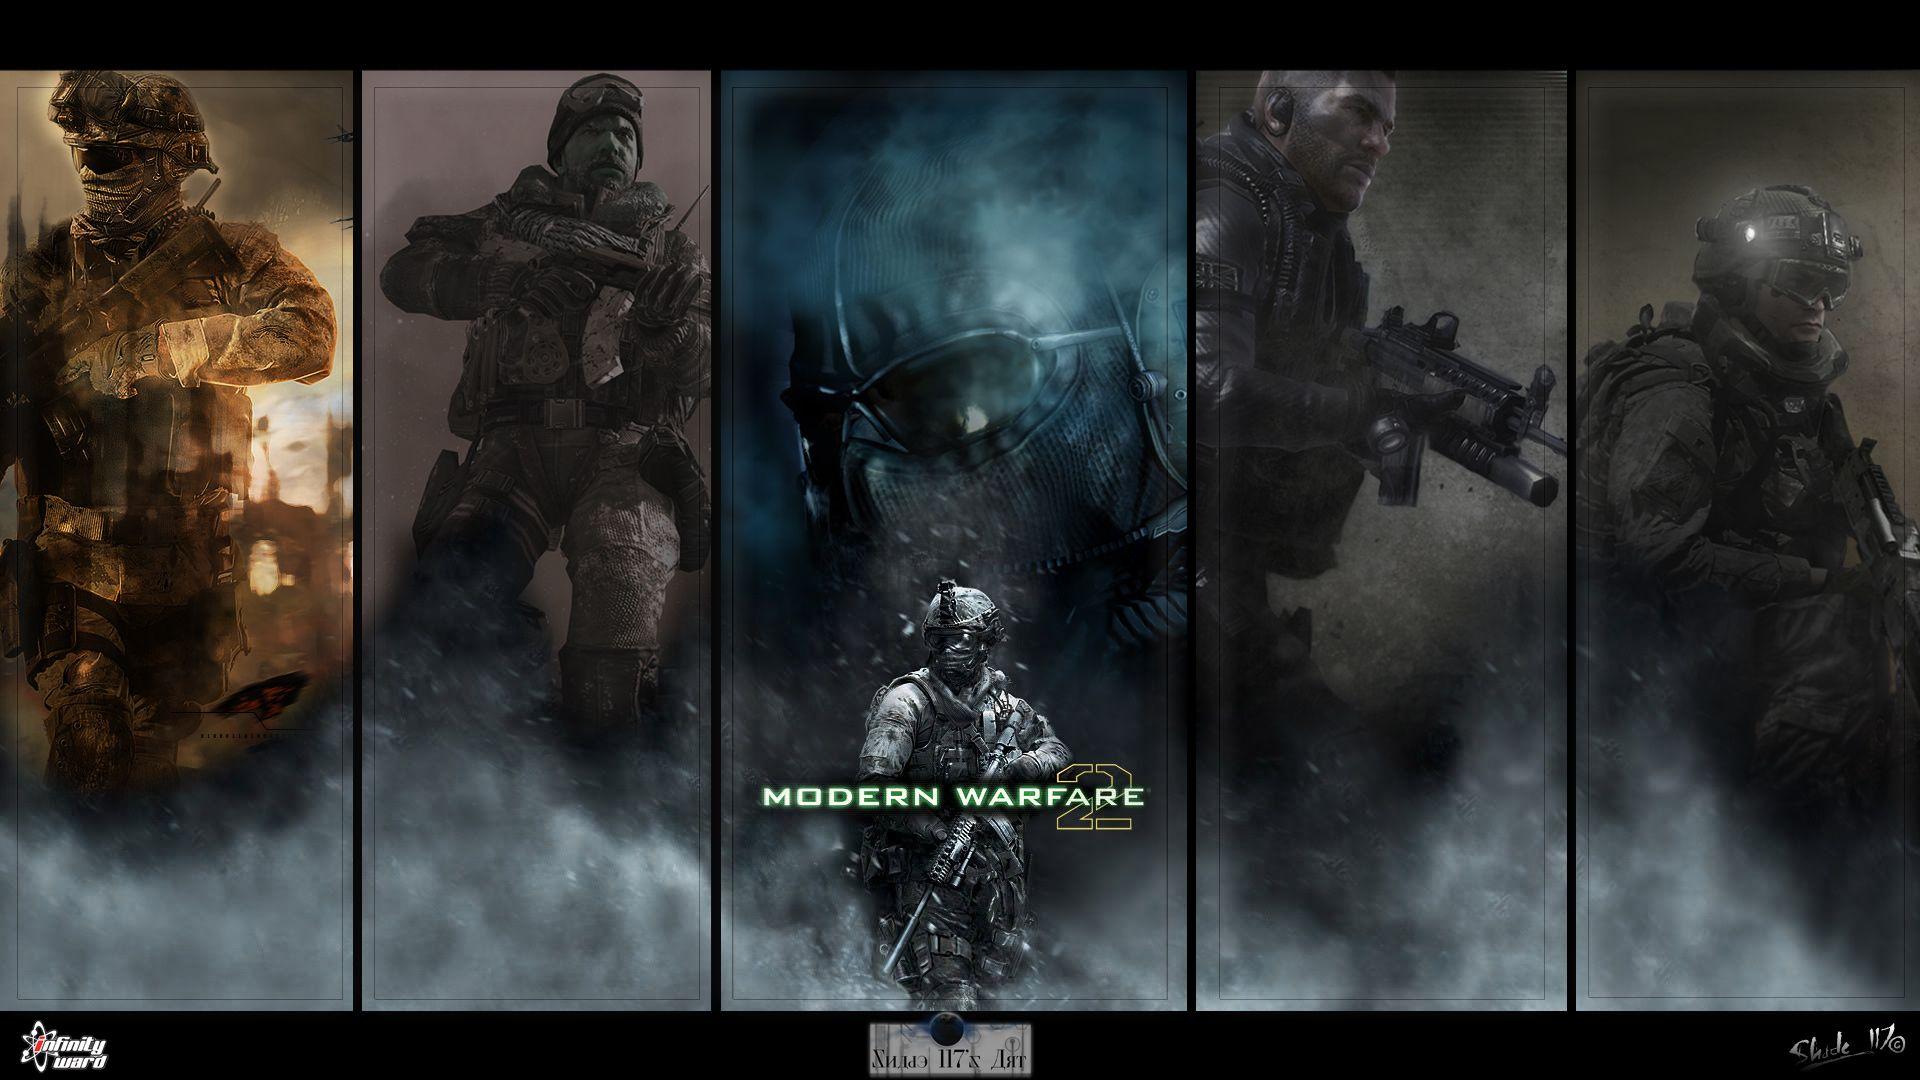 ZZL:78 Of Duty Modern Warfare 2 HD Image Free